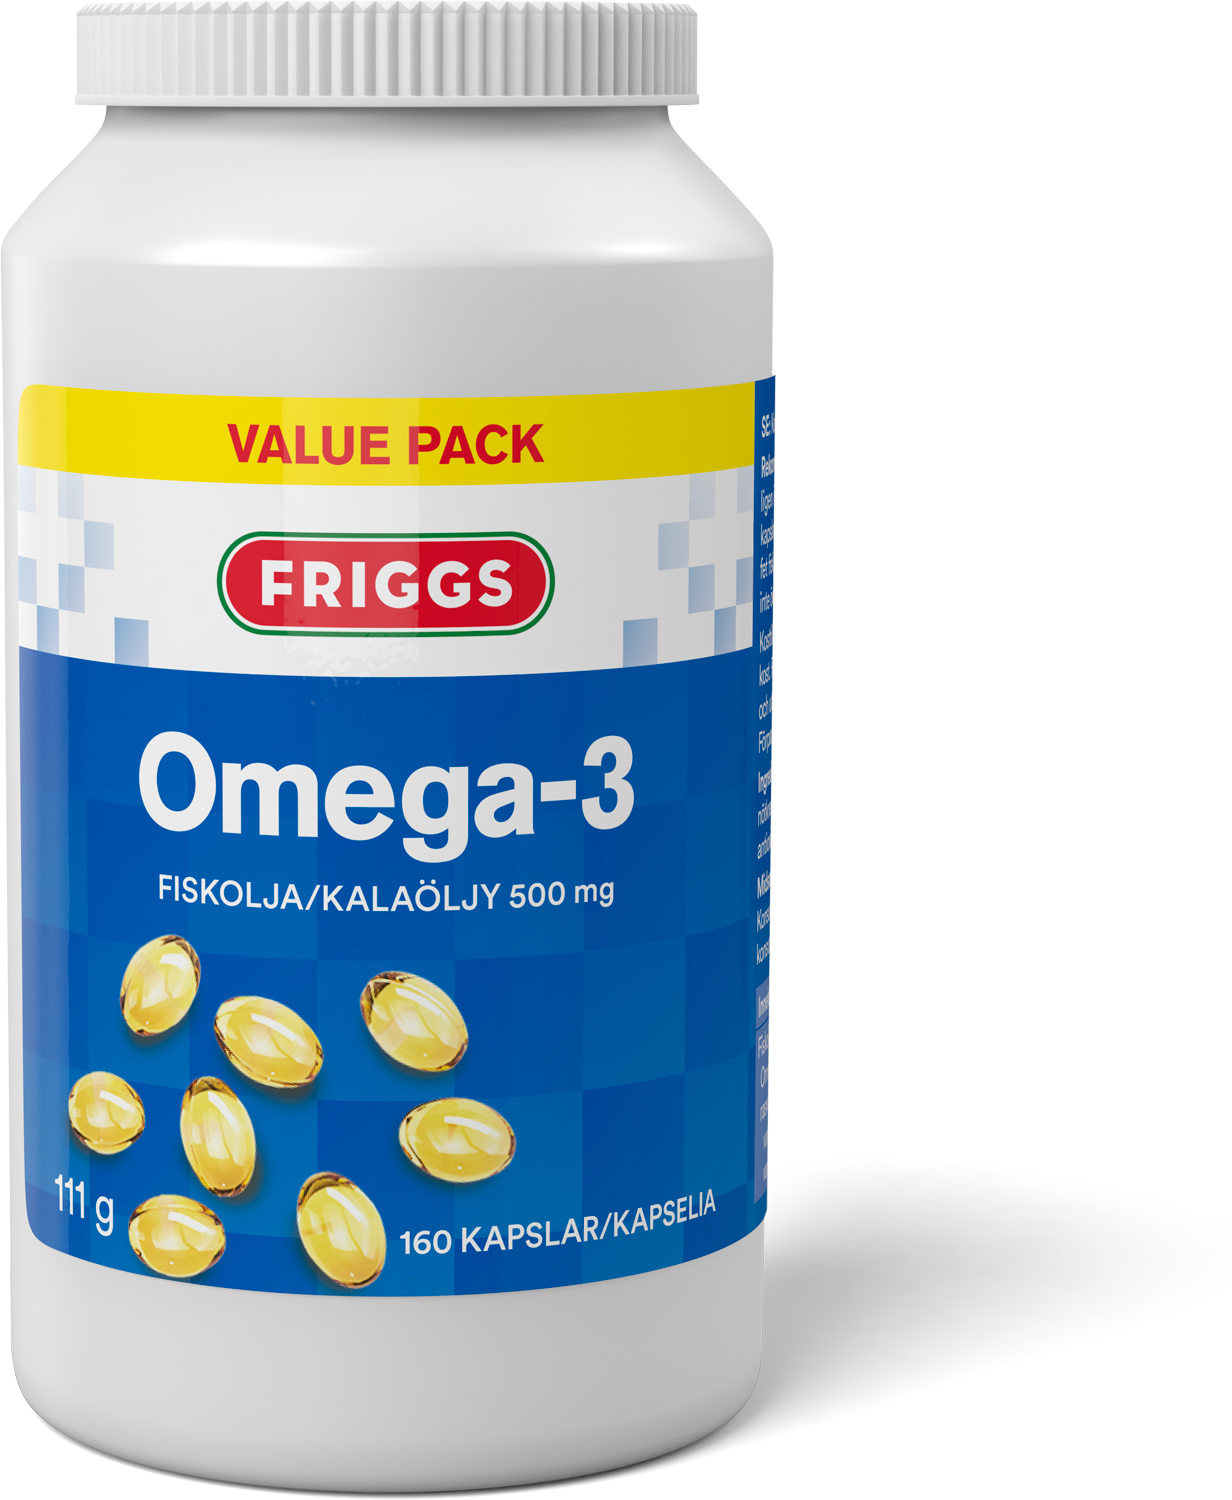 Friggs Omega-3 Kalaöljykapseli 160 kaps.